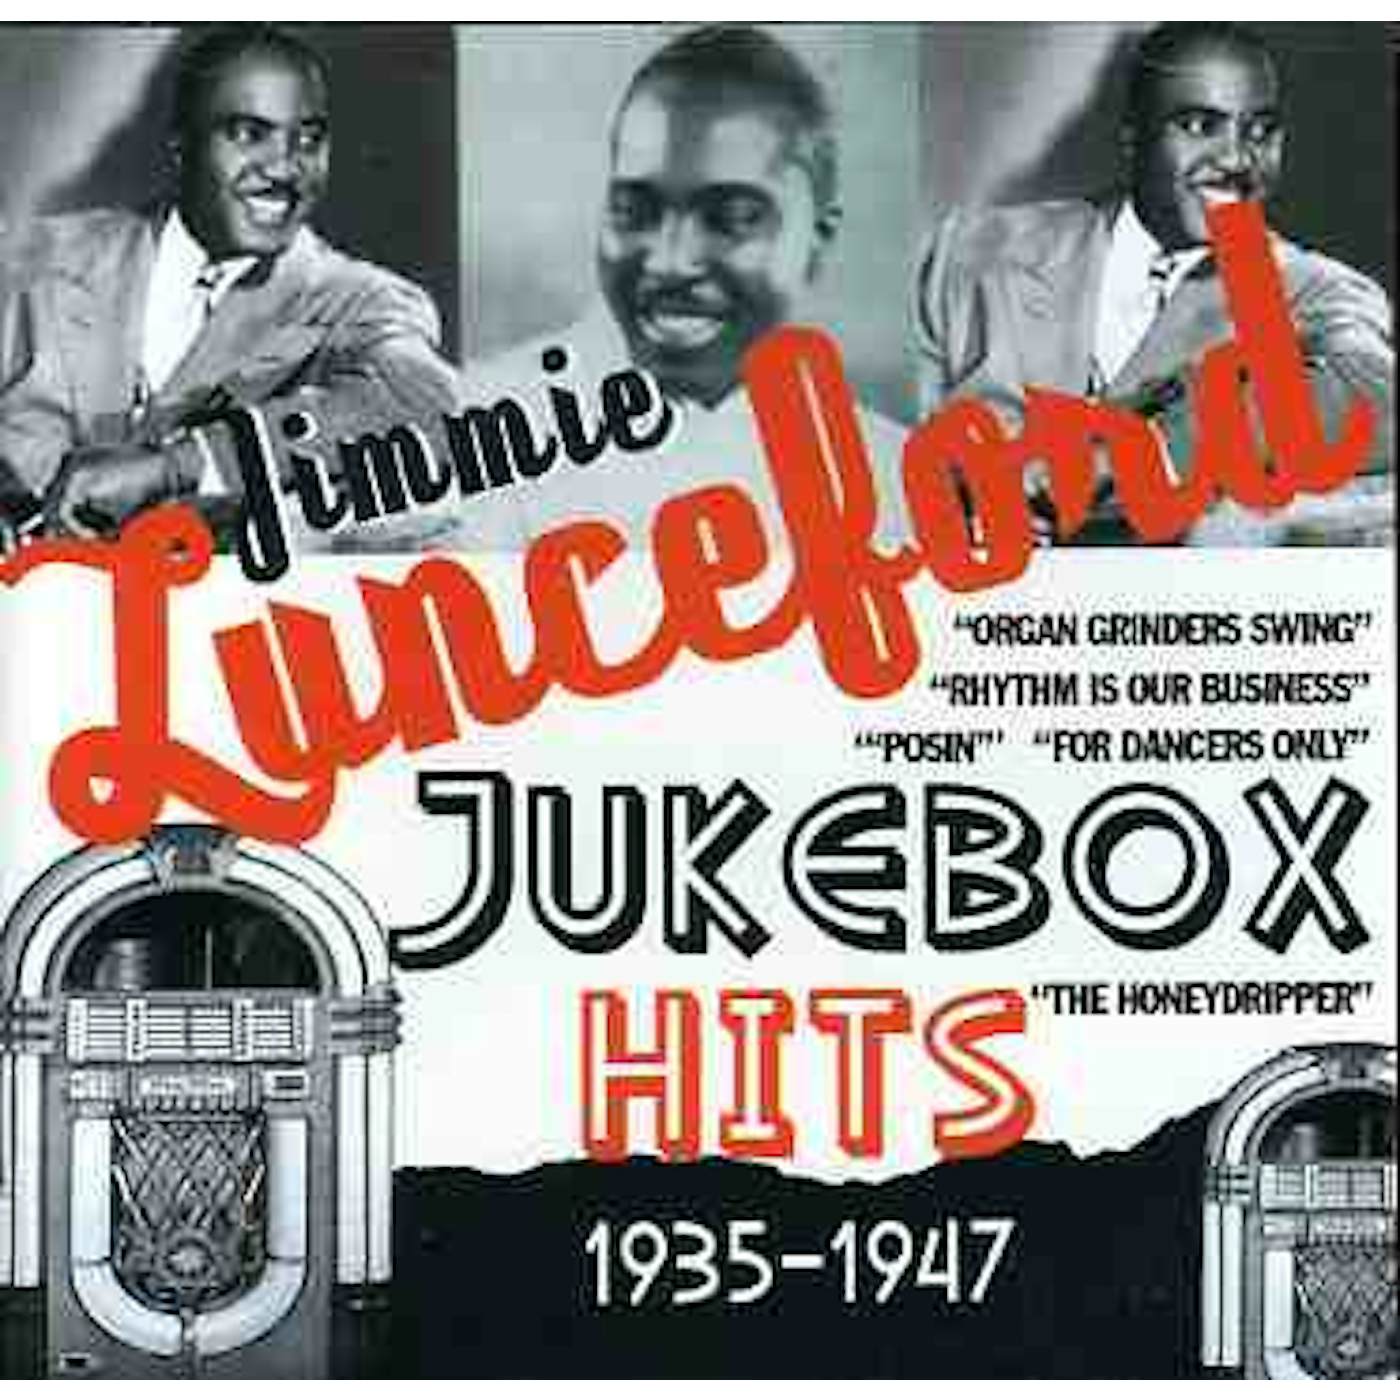 Jimmie Lunceford JUKEBOX HITS: 1935-1947 CD